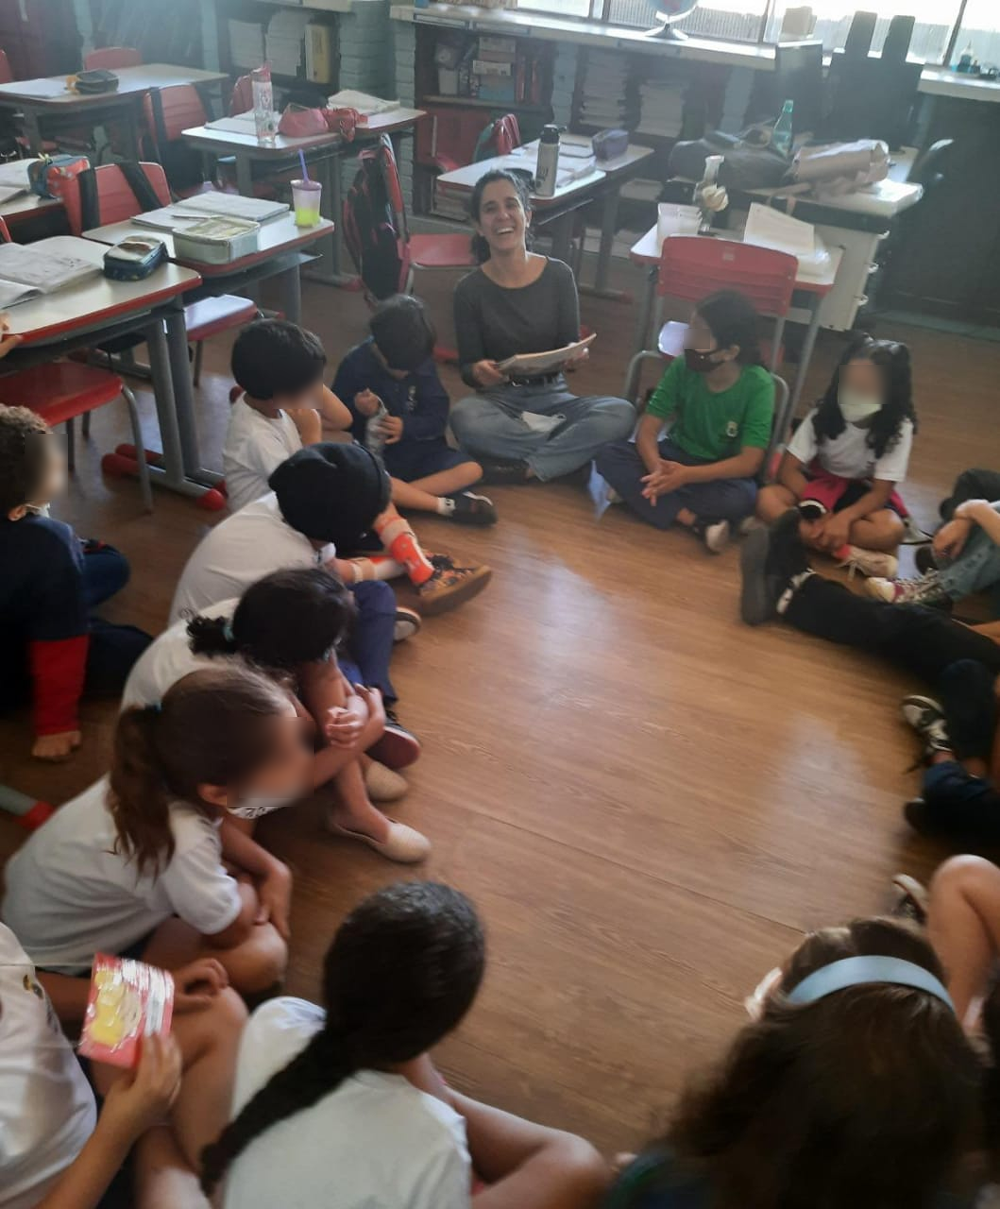 Professora e alunos sentados no chão de uma sala de aula, em círculo. A docente está sorrindo, com um livro em mãos.